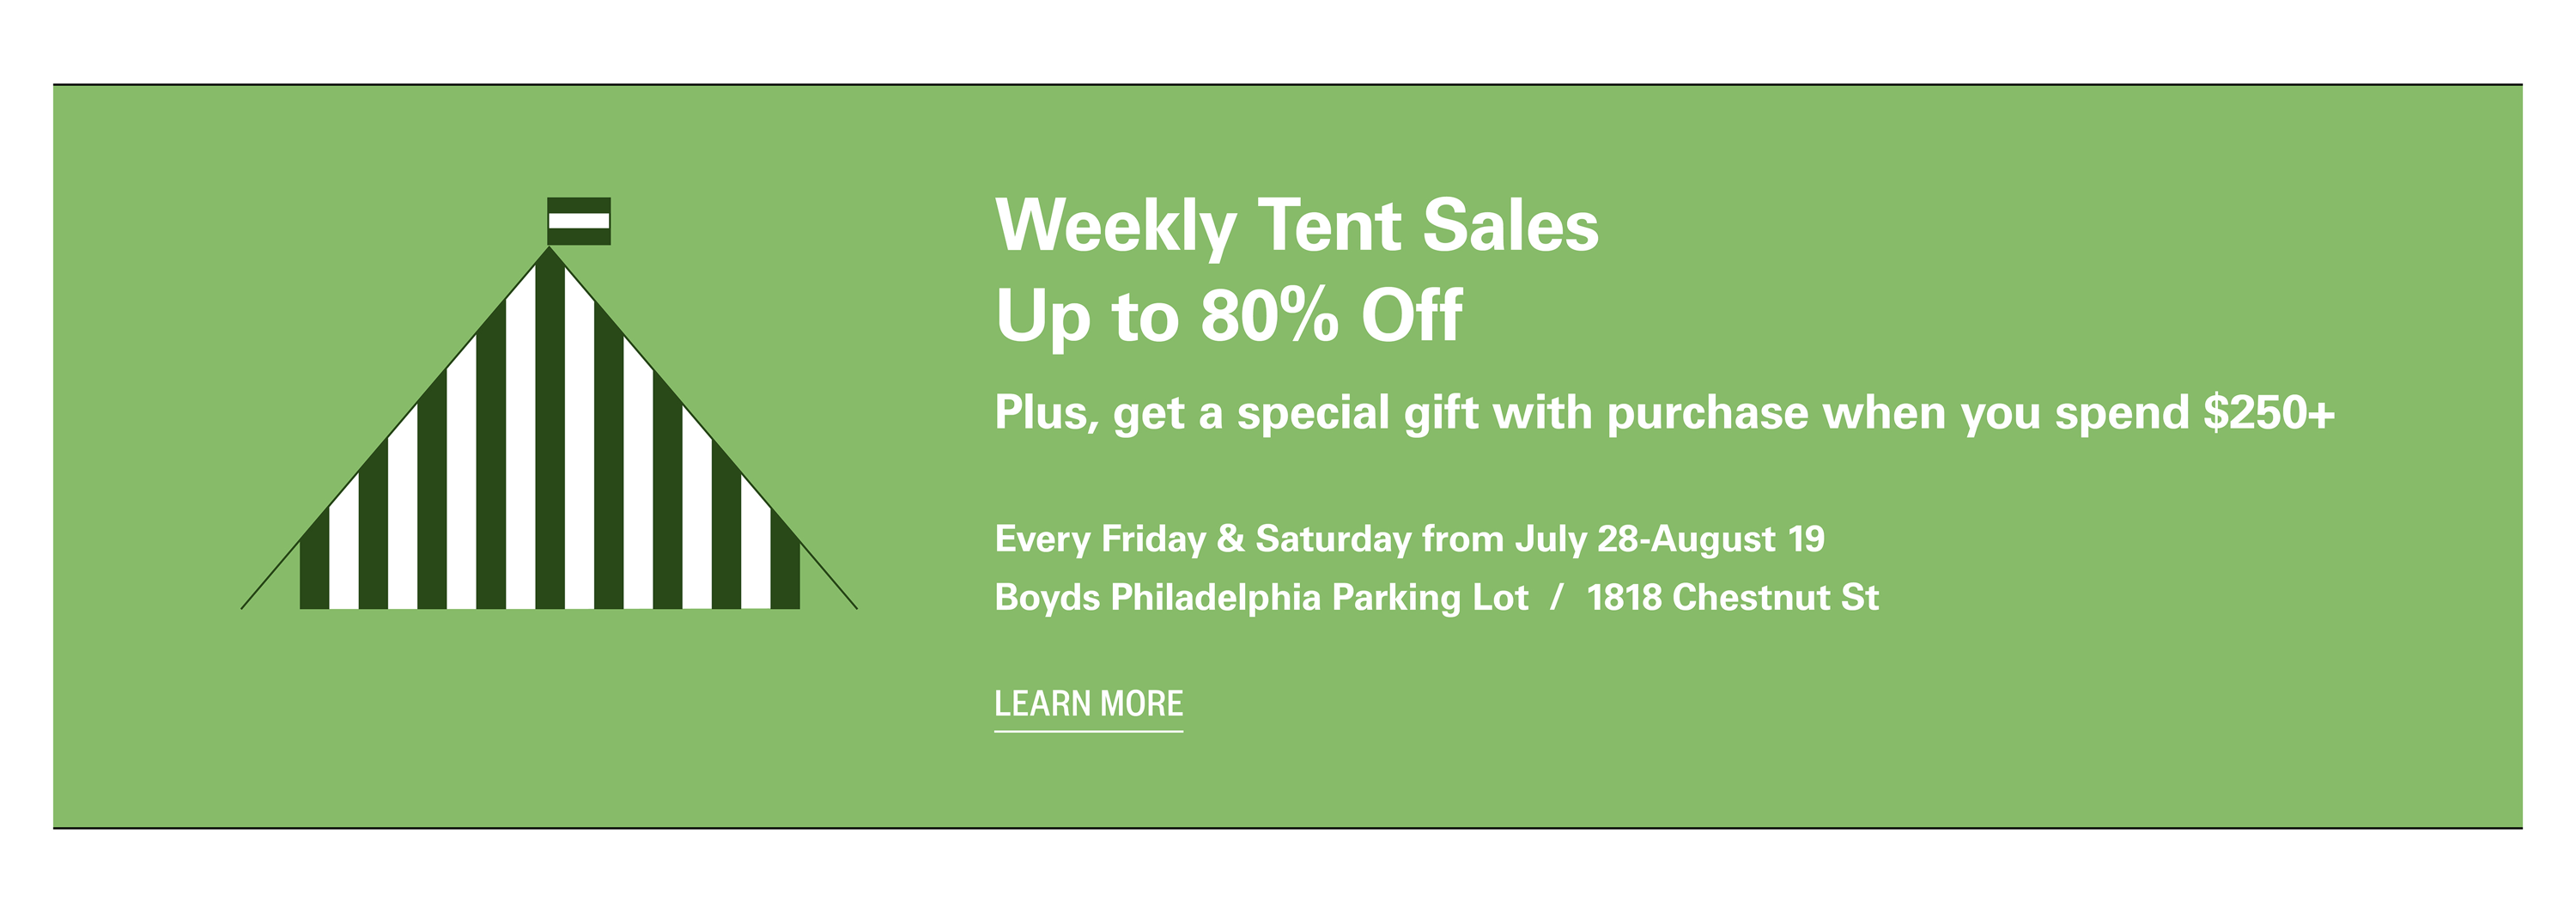 Tent Sales